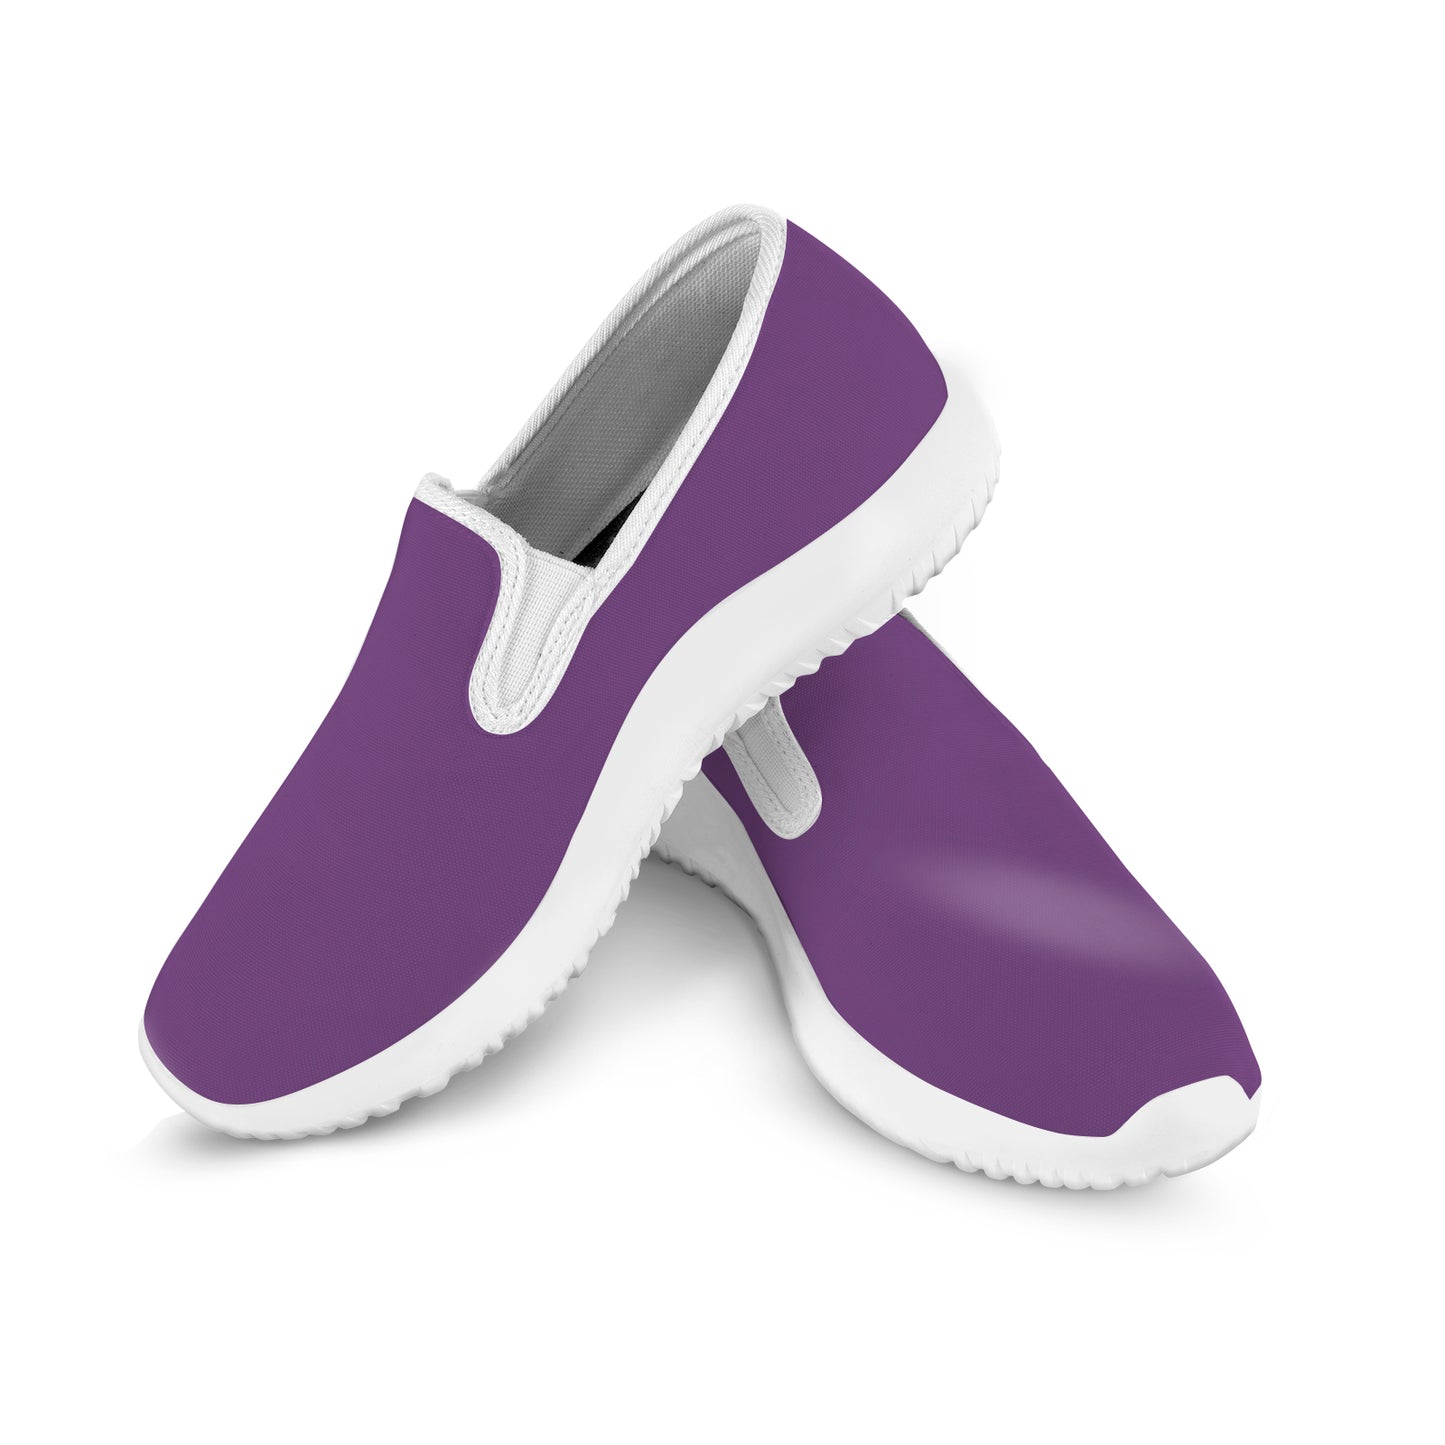 Women's Slip-on Sneakers - Classic Purple